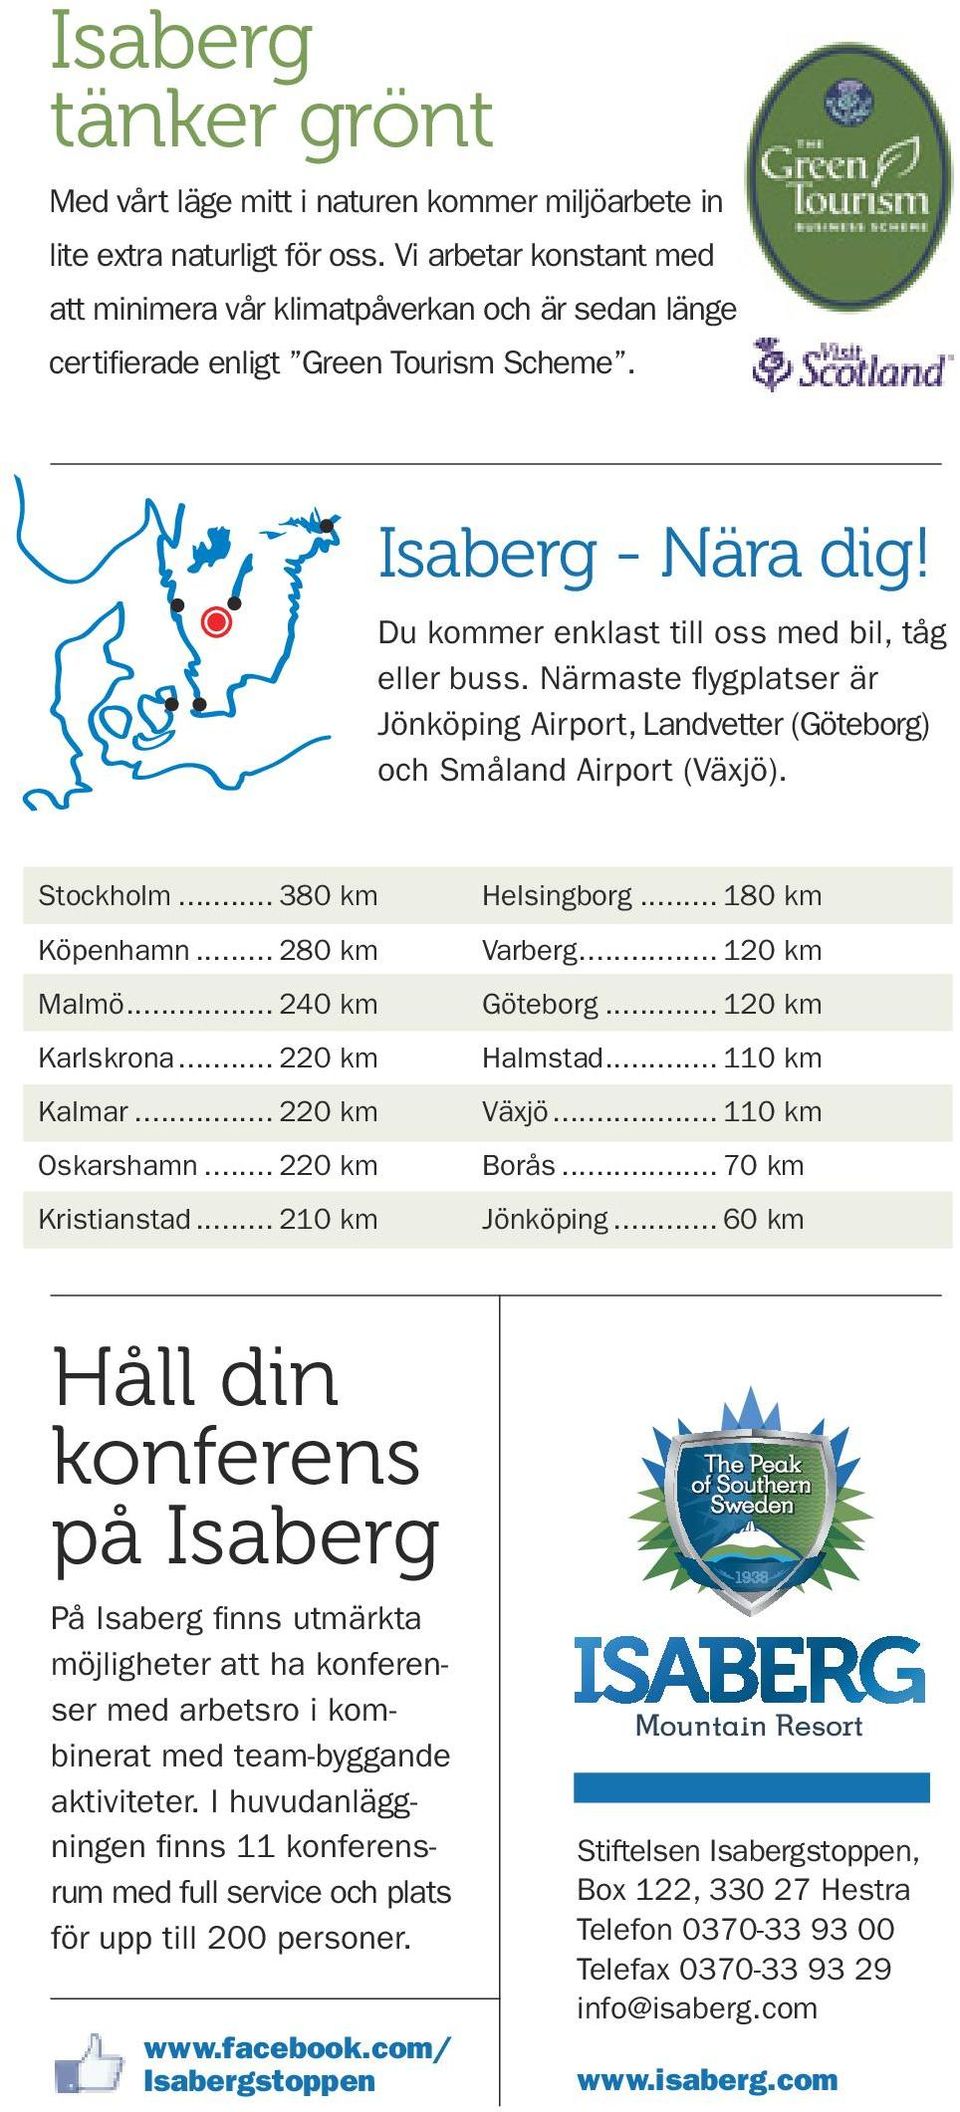 Närmaste flygplatser är Jönköping Airport, Landvetter (Göteborg) och Småland Airport (Växjö). Stockholm... 380 km Köpenhamn... 280 km Malmö... 240 km Karlskrona... 220 km Kalmar... 220 km Oskarshamn.